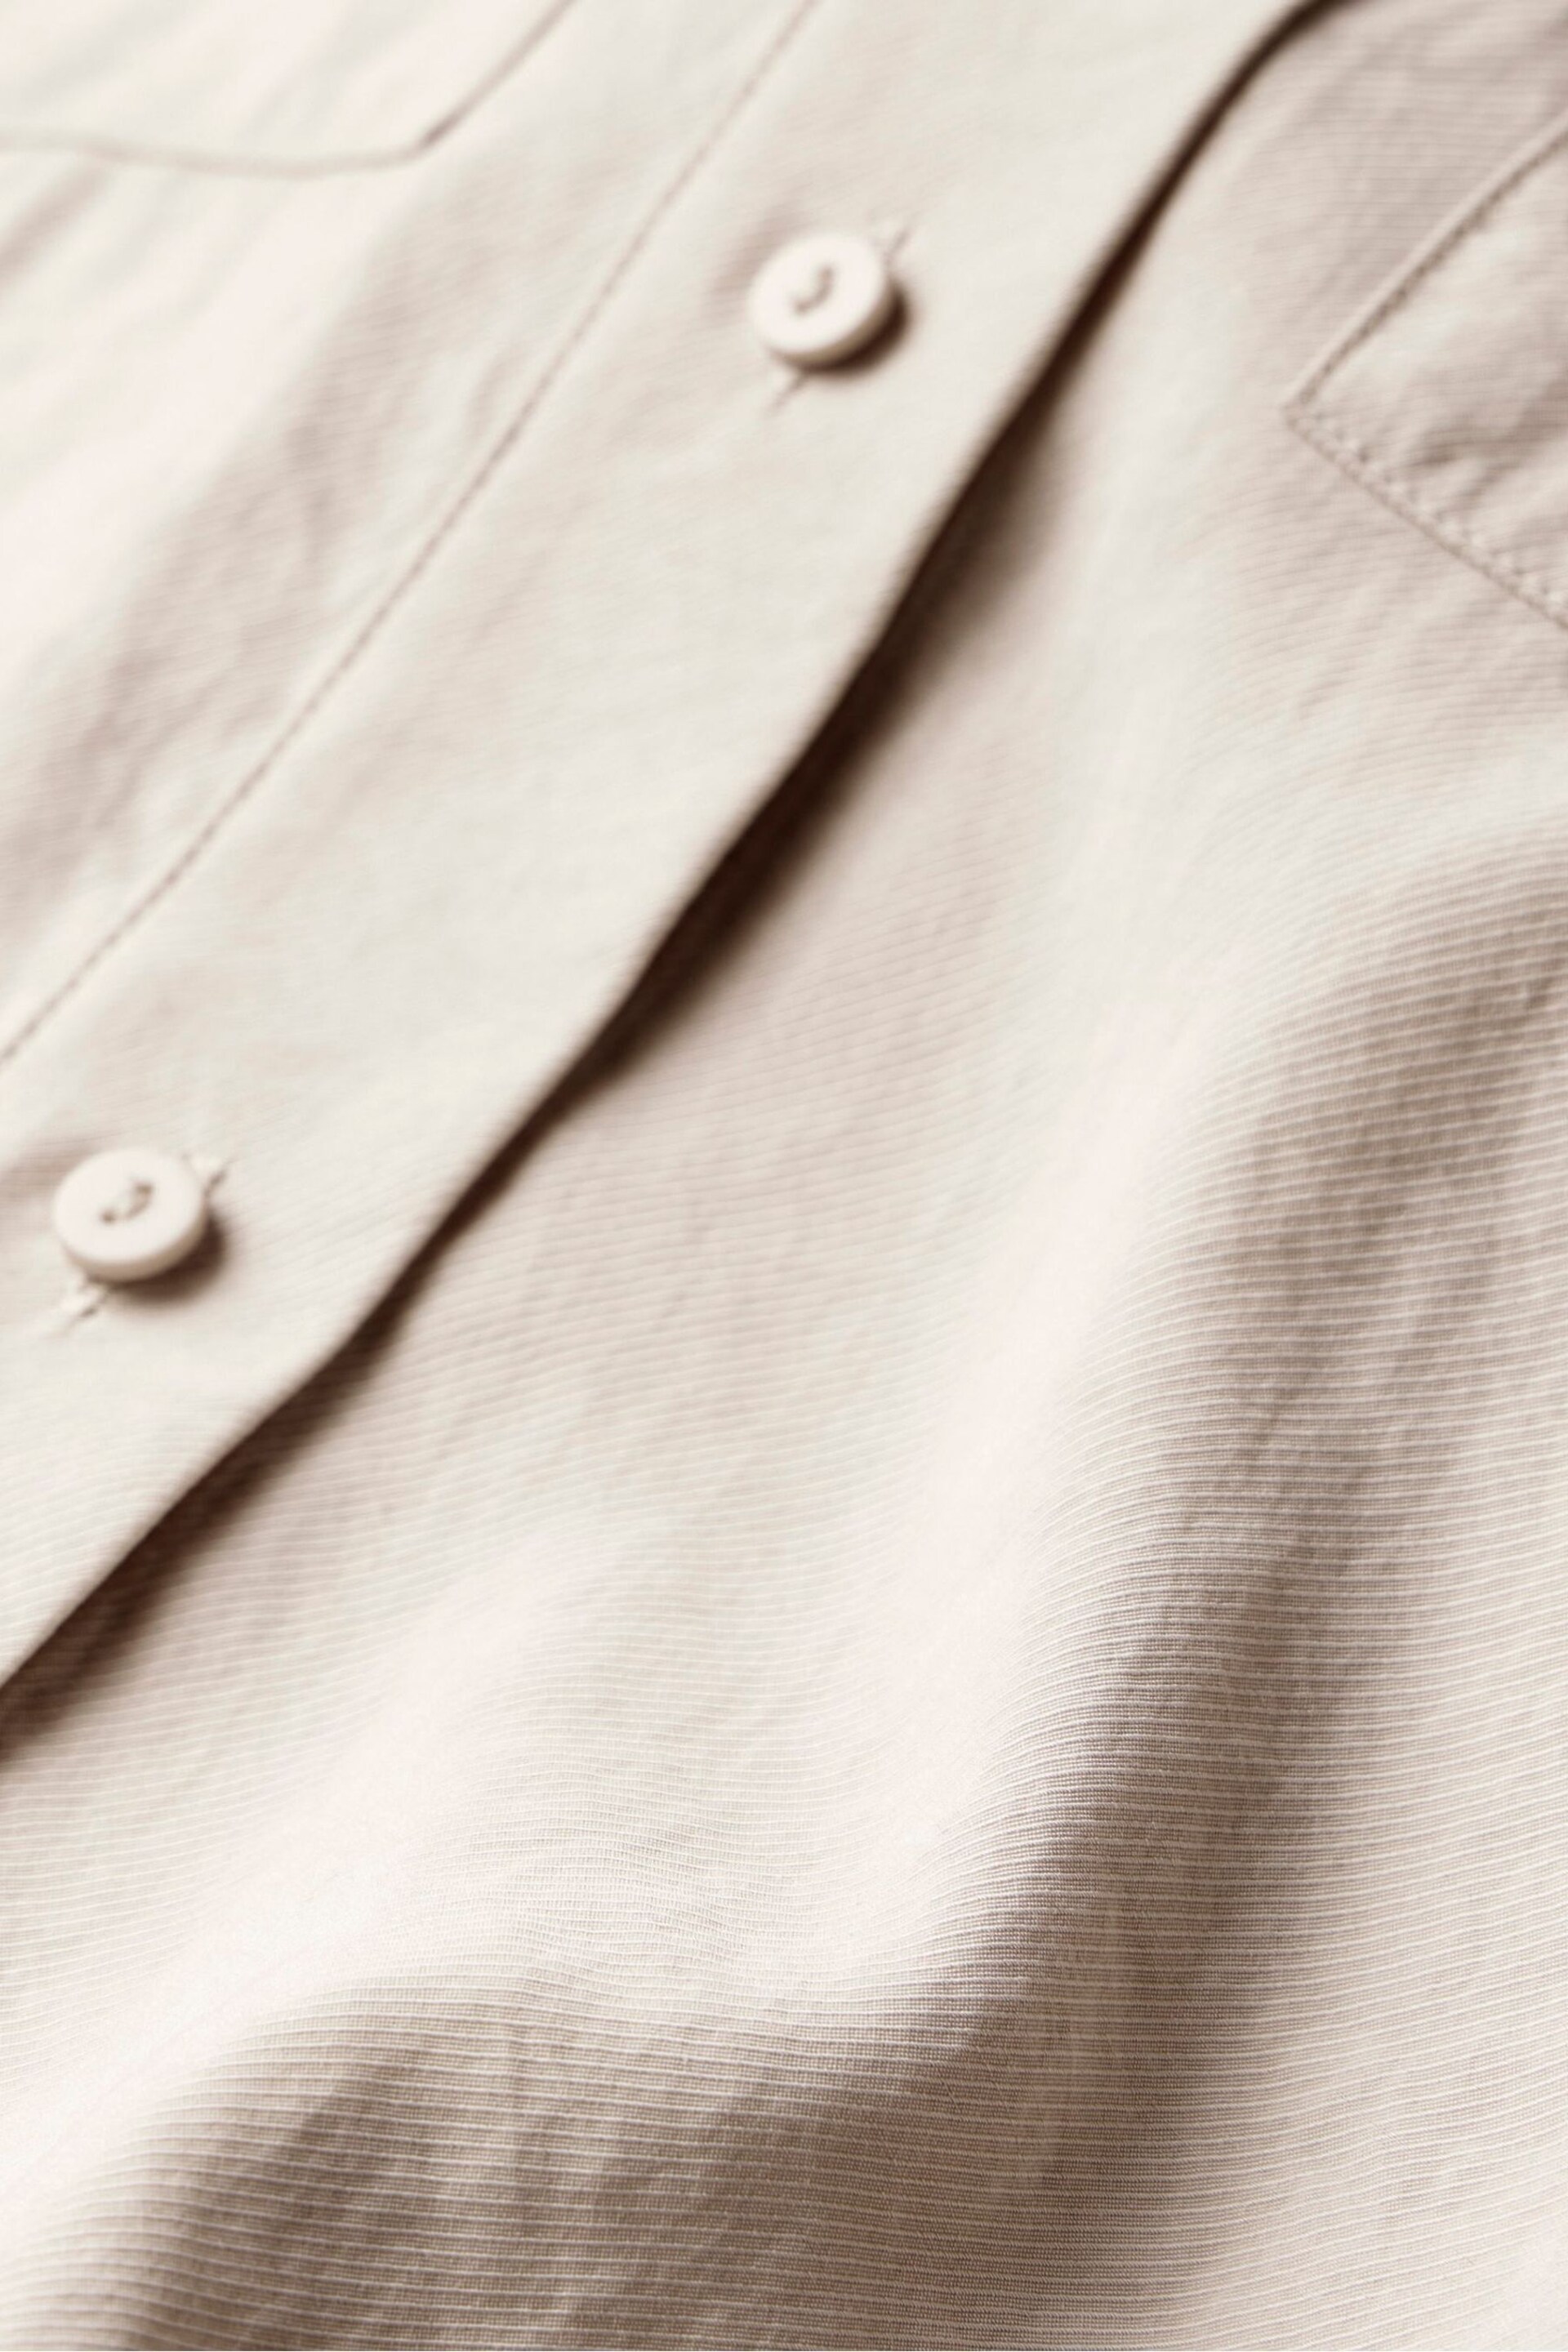 Mint Velvet Cream Sleeveless Utility Shirt - Image 8 of 8